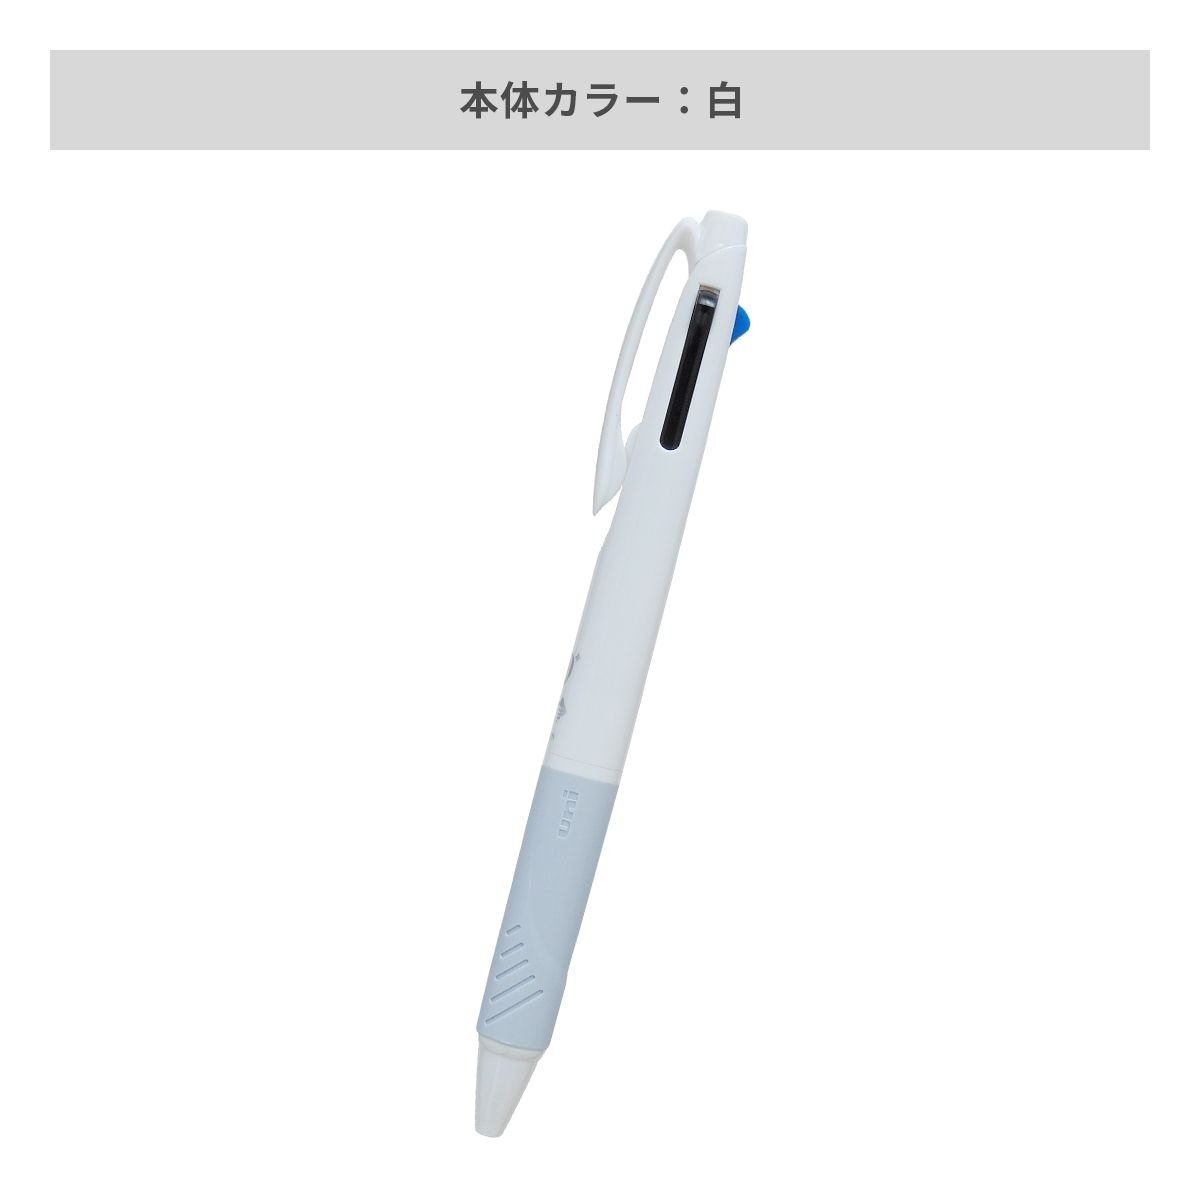 三菱鉛筆 ジェットストリーム 3色ボールペン AGピュア抗菌 白軸 0.7mm【名入れボールペン / パッド印刷】 画像4